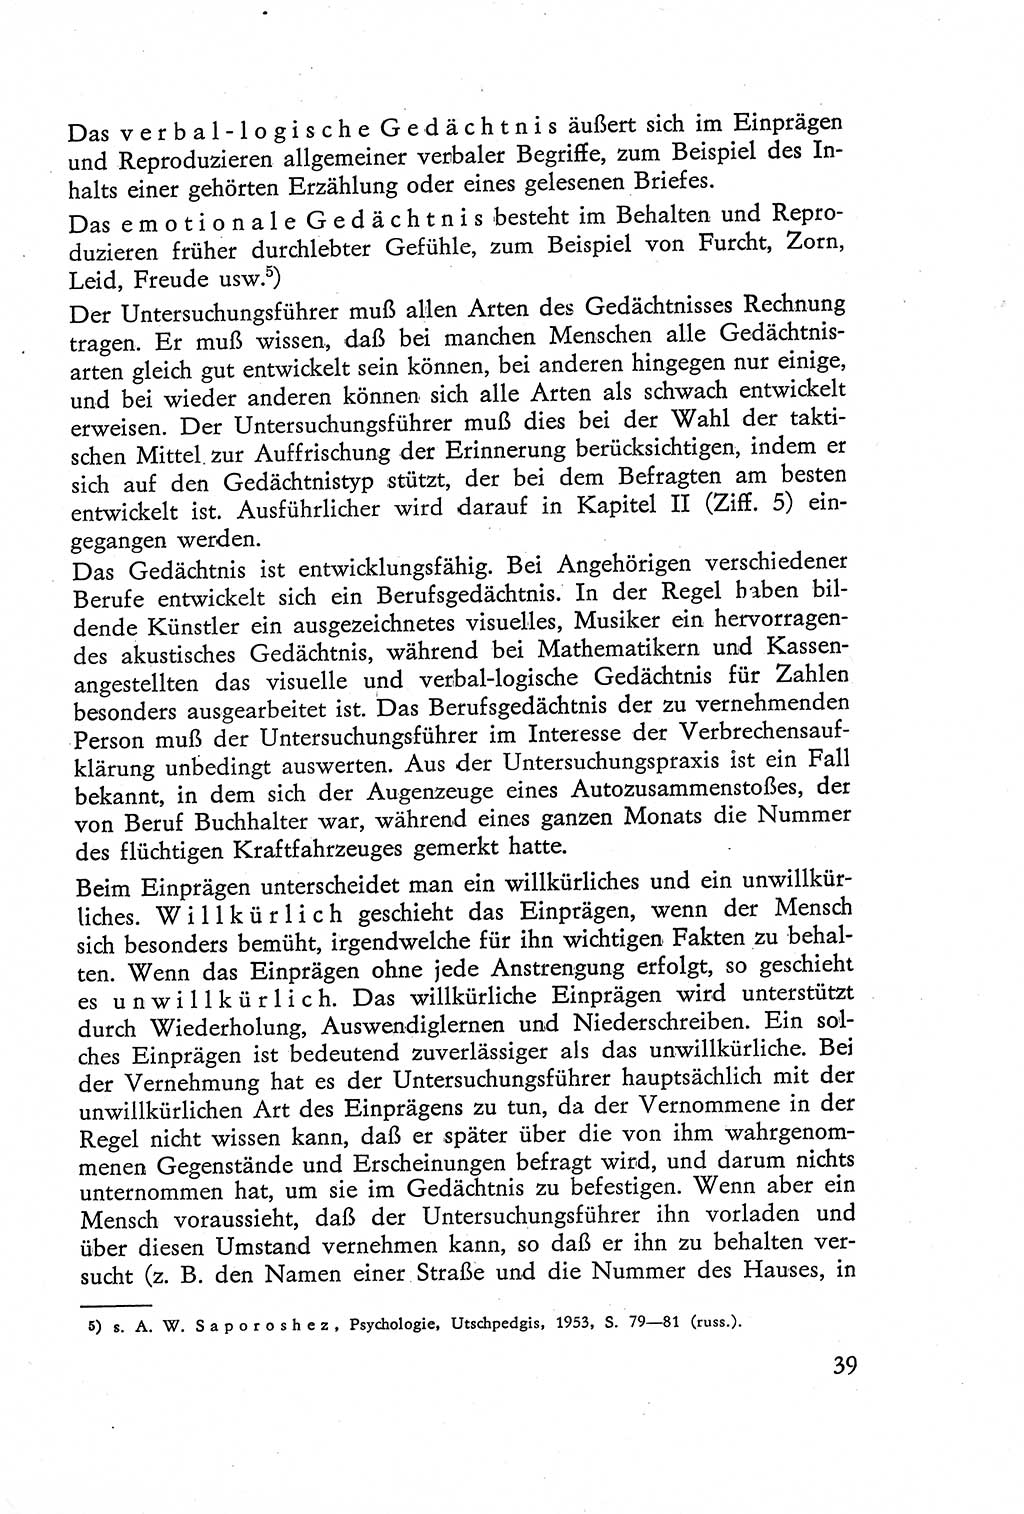 Die Vernehmung [Deutsche Demokratische Republik (DDR)] 1960, Seite 39 (Vern. DDR 1960, S. 39)